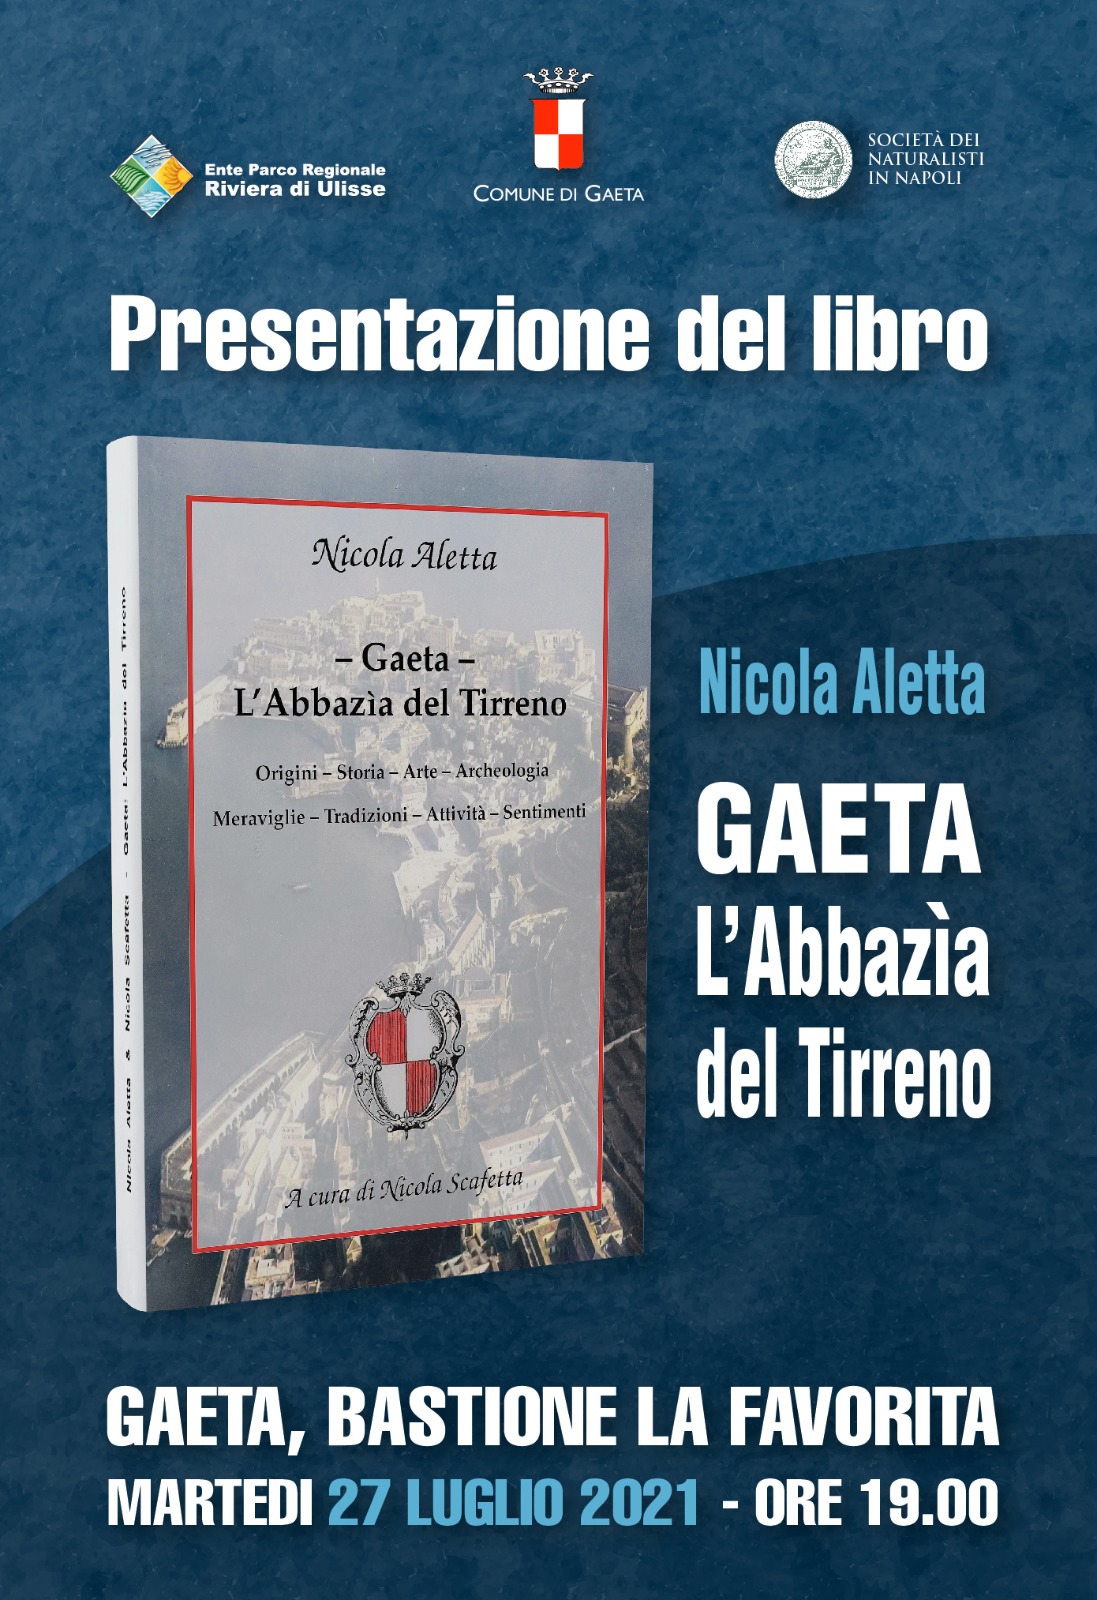 "Gaeta - L'Abbazia del Tirreno", di Nicola Scafetta